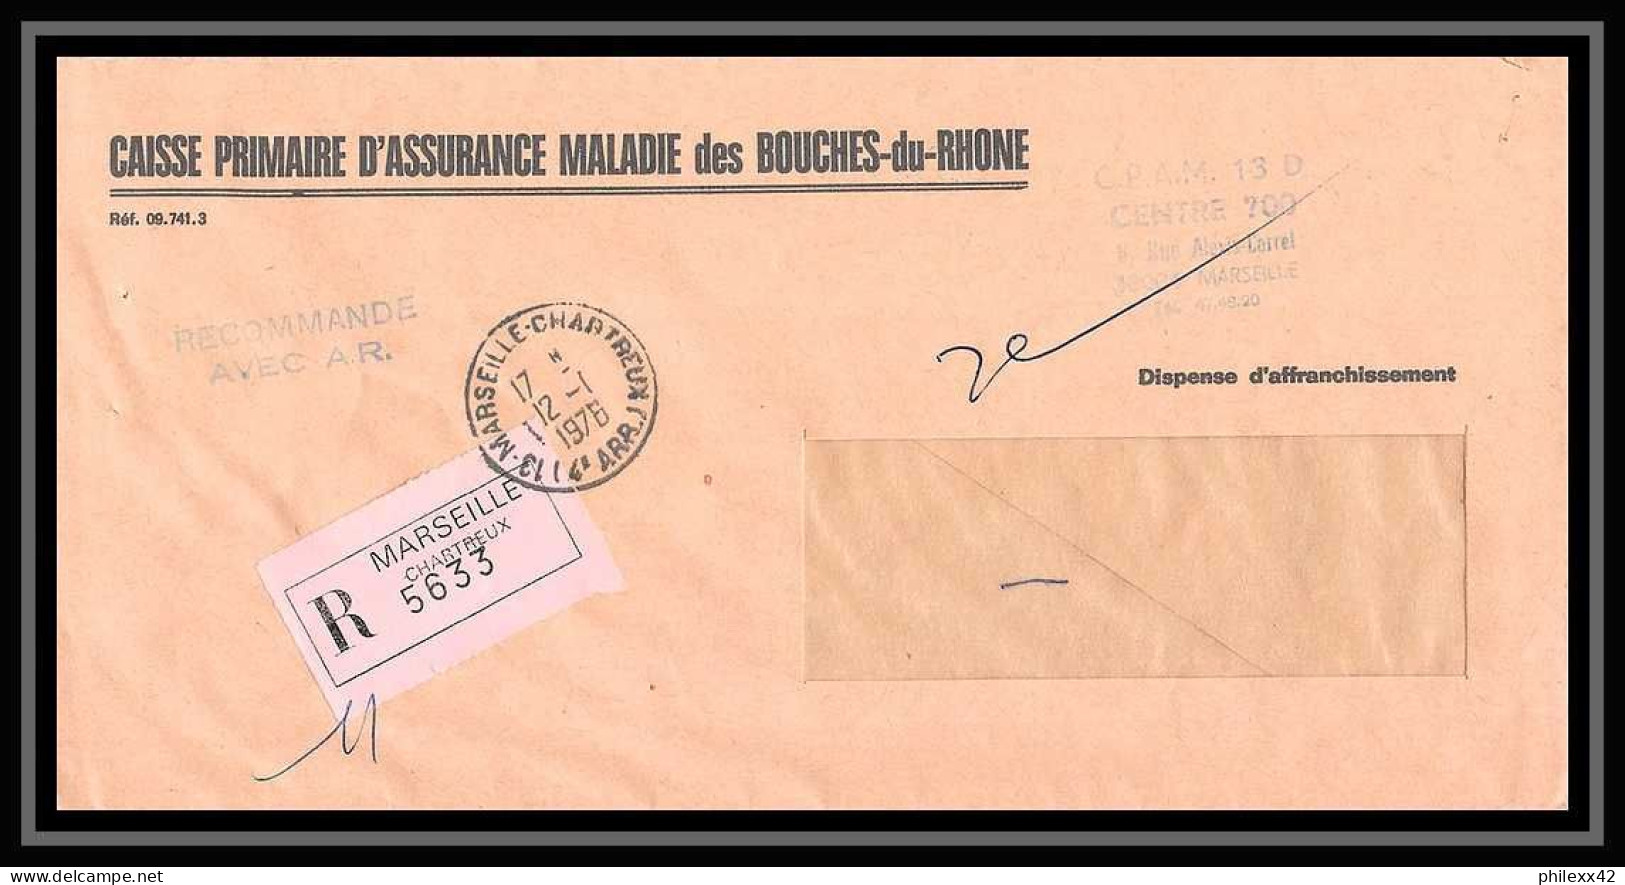 109587 lot de 9 Lettres Bouches du rhone Marseille Les chartreux